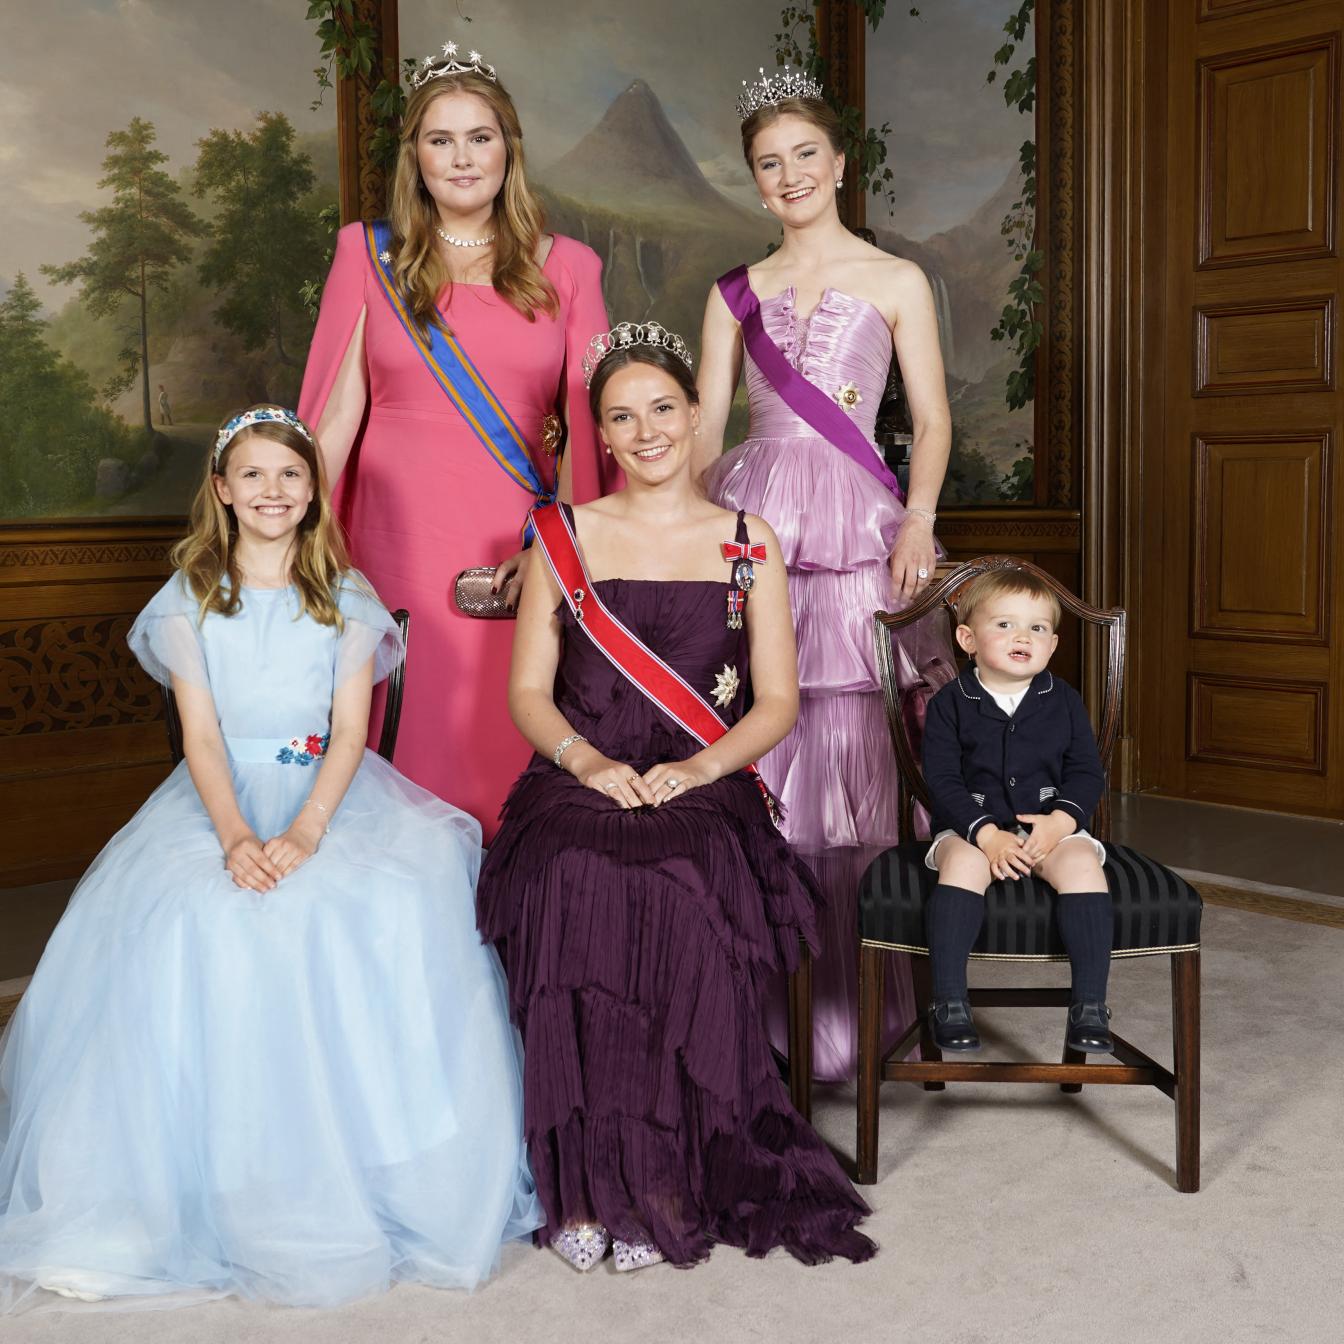 1. Reihe v.l.n.r.: Prinzessin Estelle von Schweden, Prinzessin Ingrid Alexandra von Norwegen, Prinz Charles von Luxemburg, 2. Reihe: Prinzessin Catharina-Amalia der Niederlande, Prinzessin Elisabeth von Belgien. 